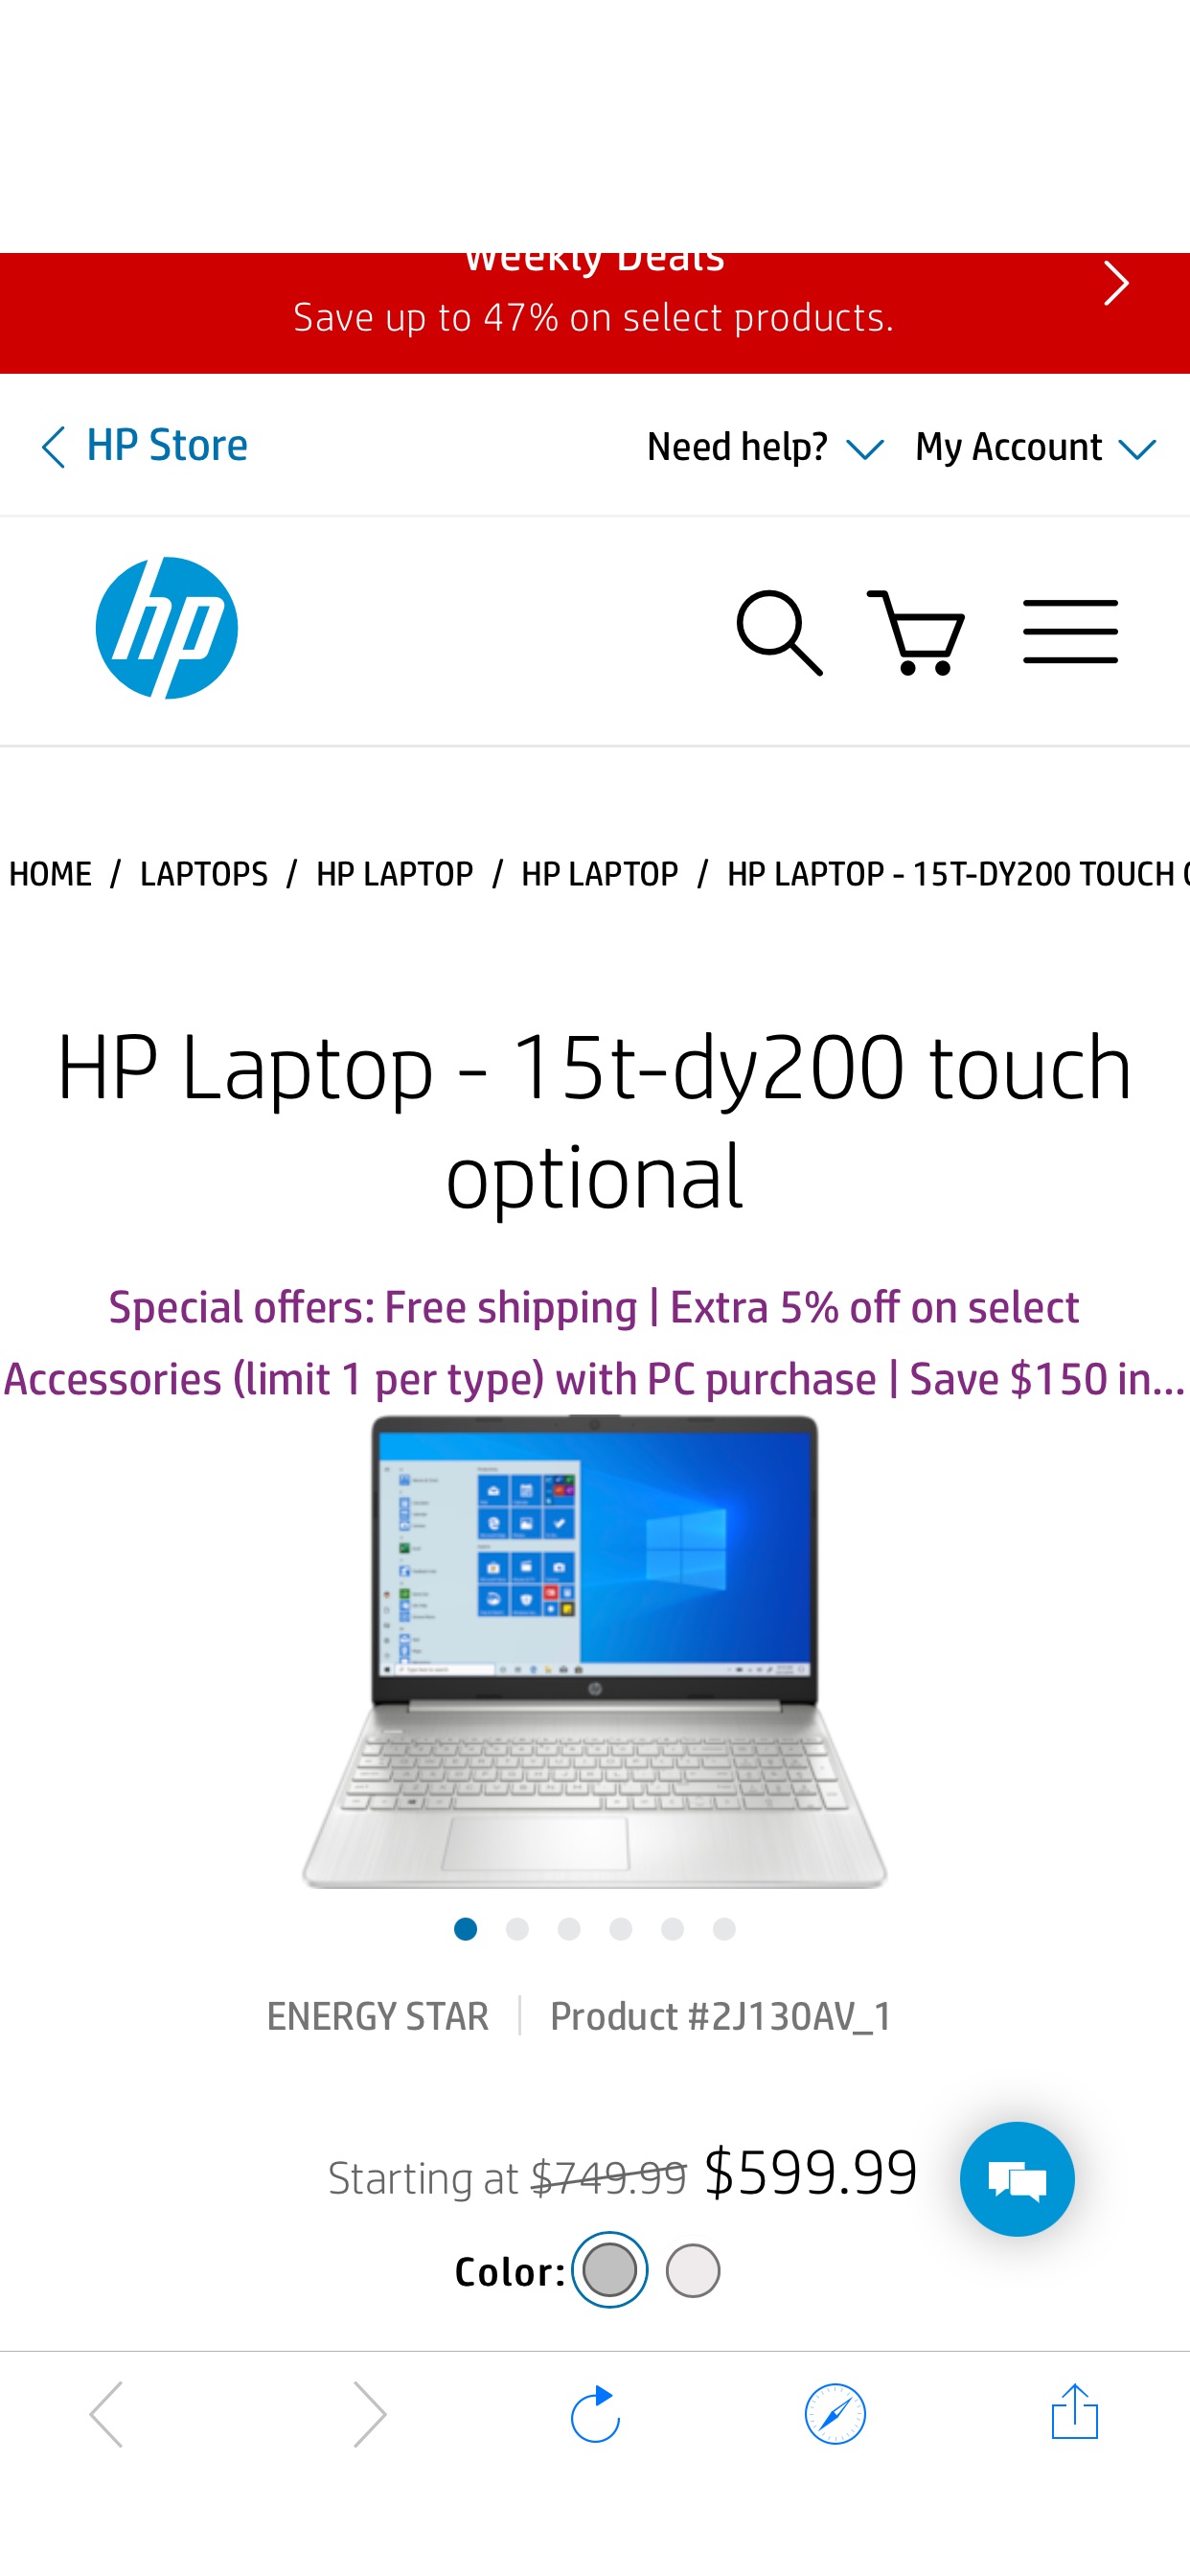 HP Laptop - 15t电脑-dy200 touch optional (2J130AV_1)